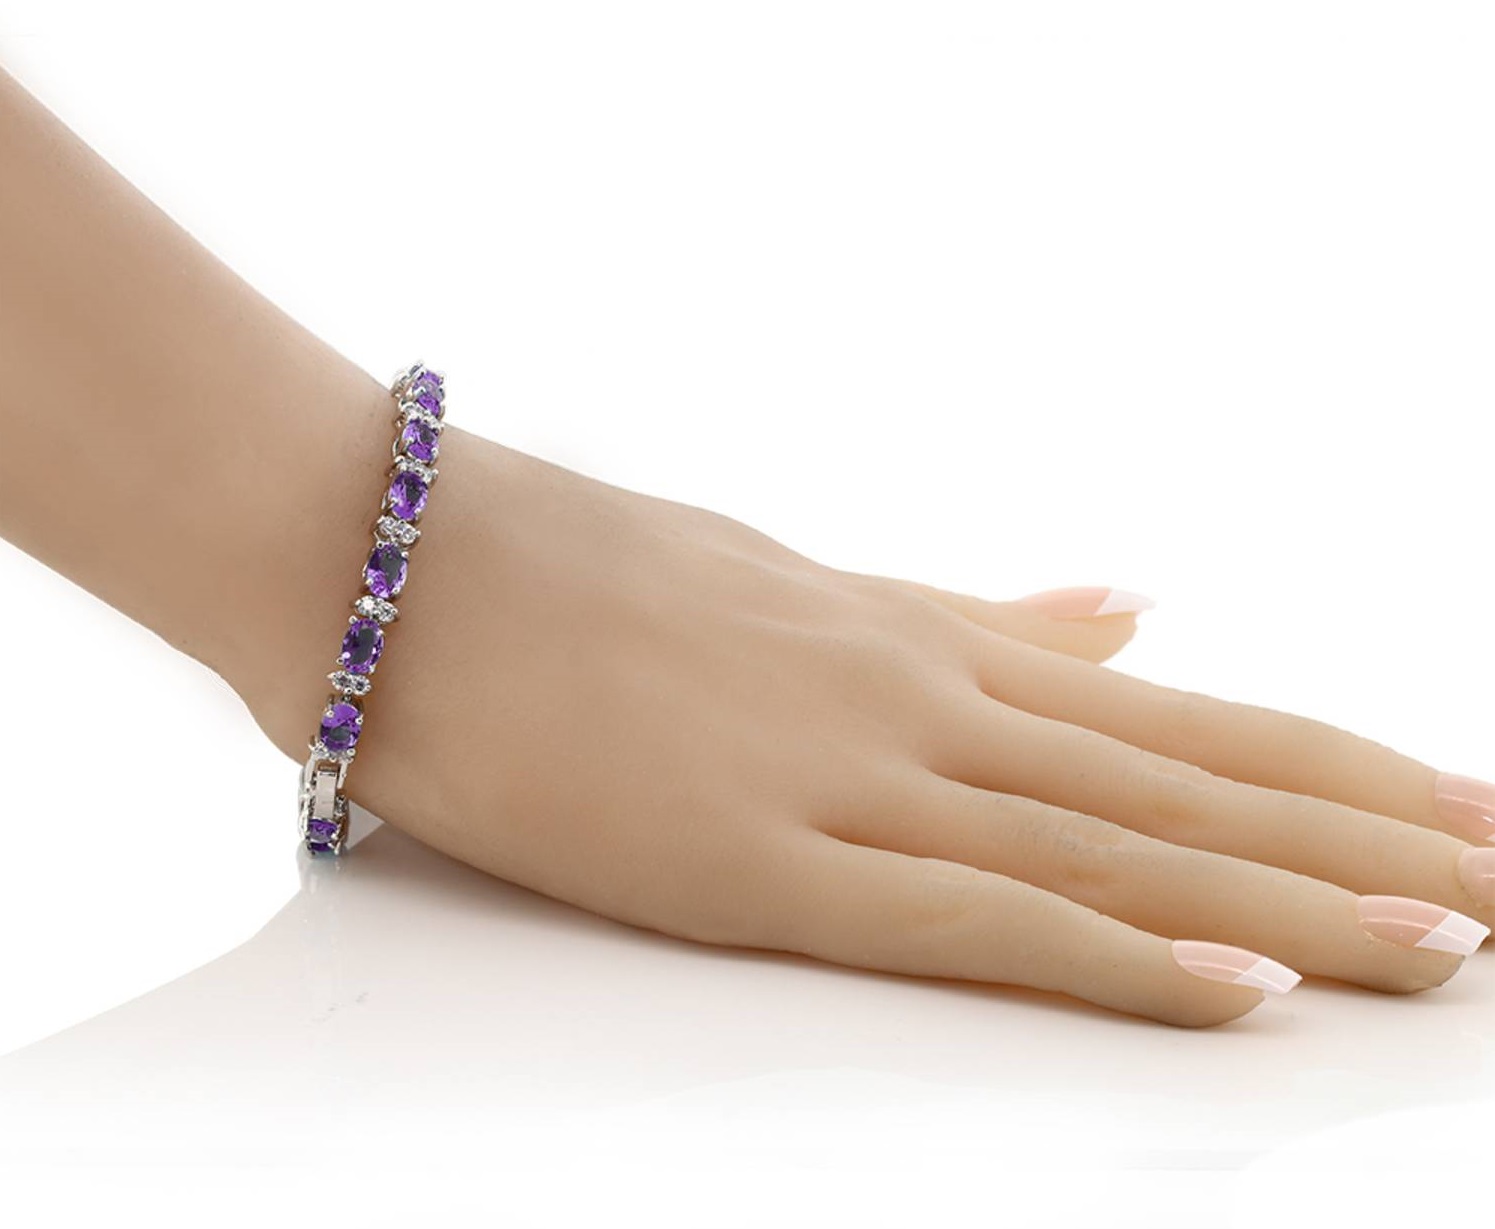 Gemstone-Bracelet.-1 Top 10 Gift Ideas for Women Over 50